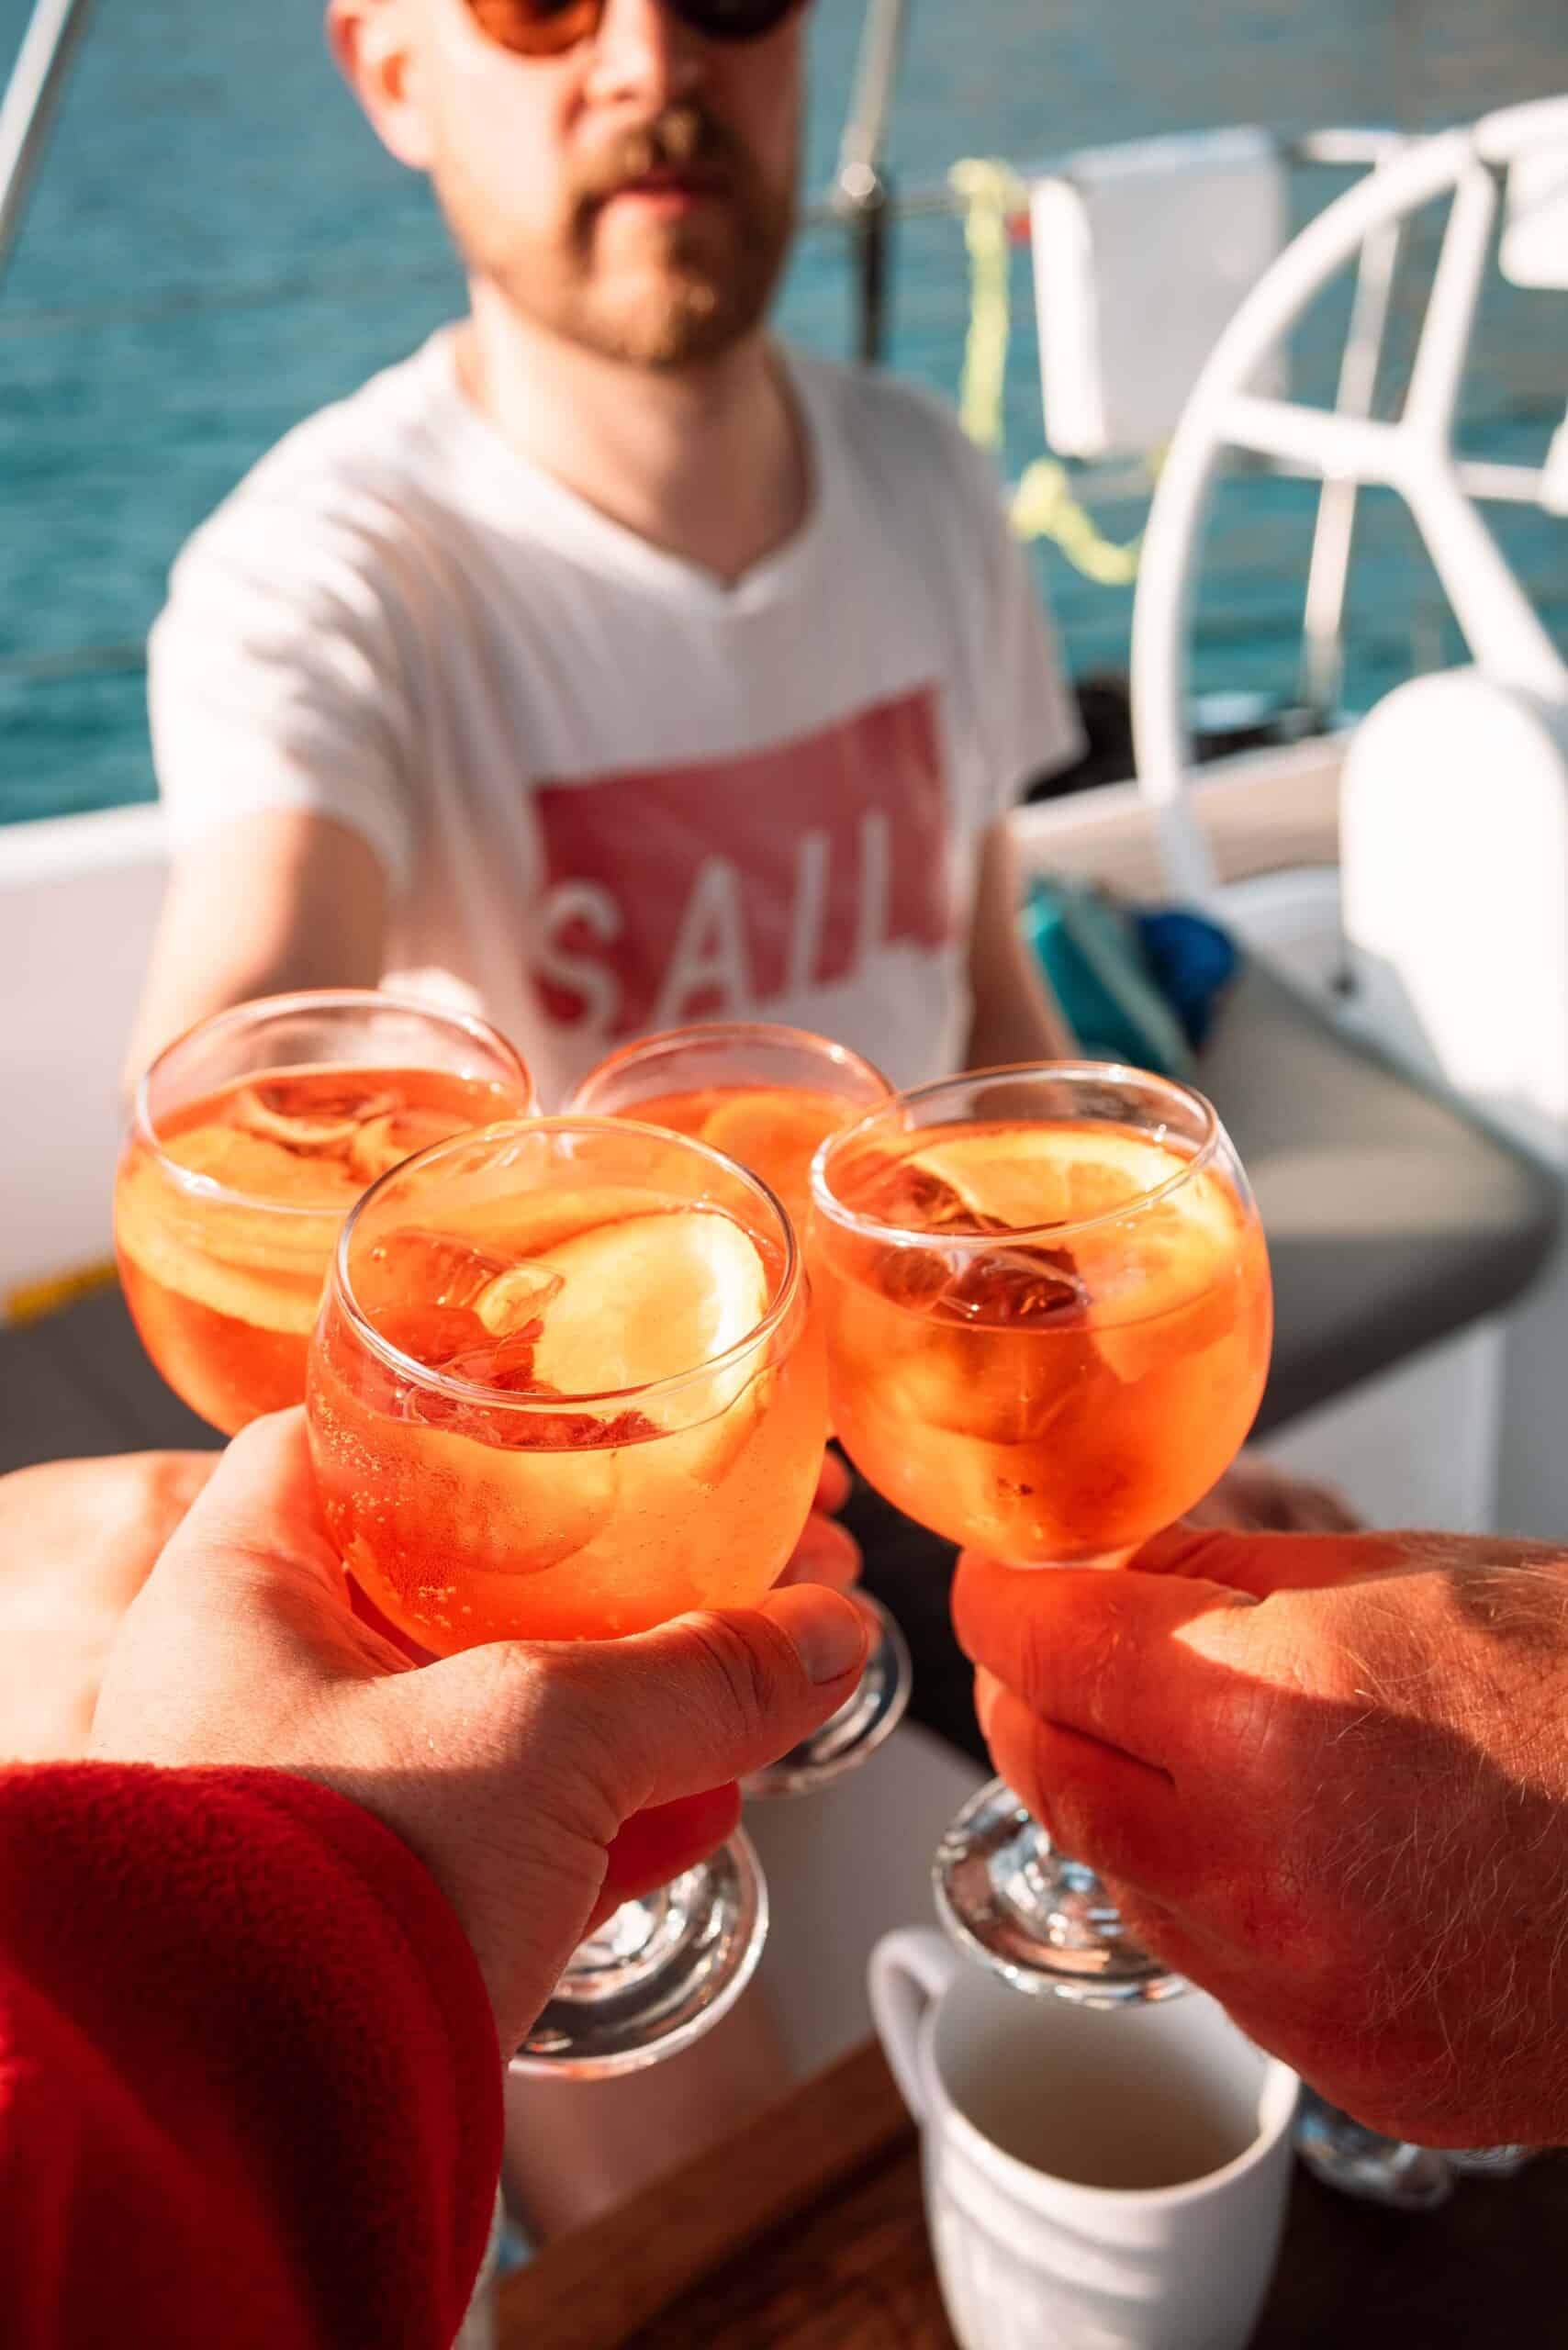 Vier Personen stoßen auf einer Segelyacht mit einem orangefarbenen Getränk an. Der Fokus liegt auf den Getränken im Vordergrund, im Hintergrund ist eine Person mit Sonnenbrille und „SAIL“-T-Shirt zu sehen. Die Szene wirkt entspannt und feierlich und fängt die Freude am Mitsegeln ein.